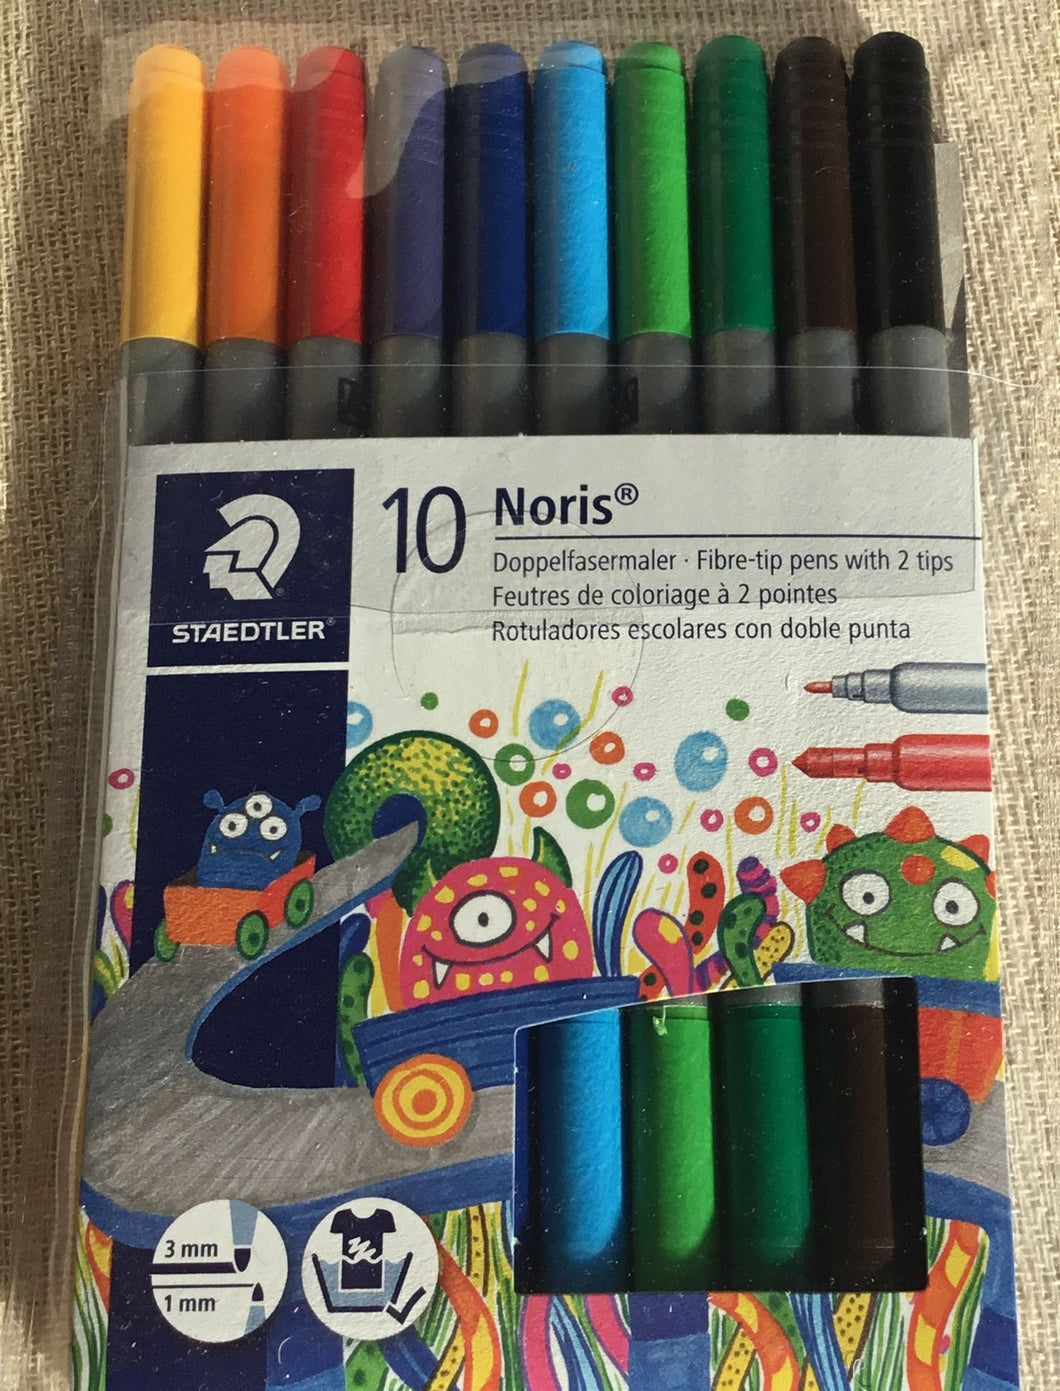 Staedtler fibre-tip pens